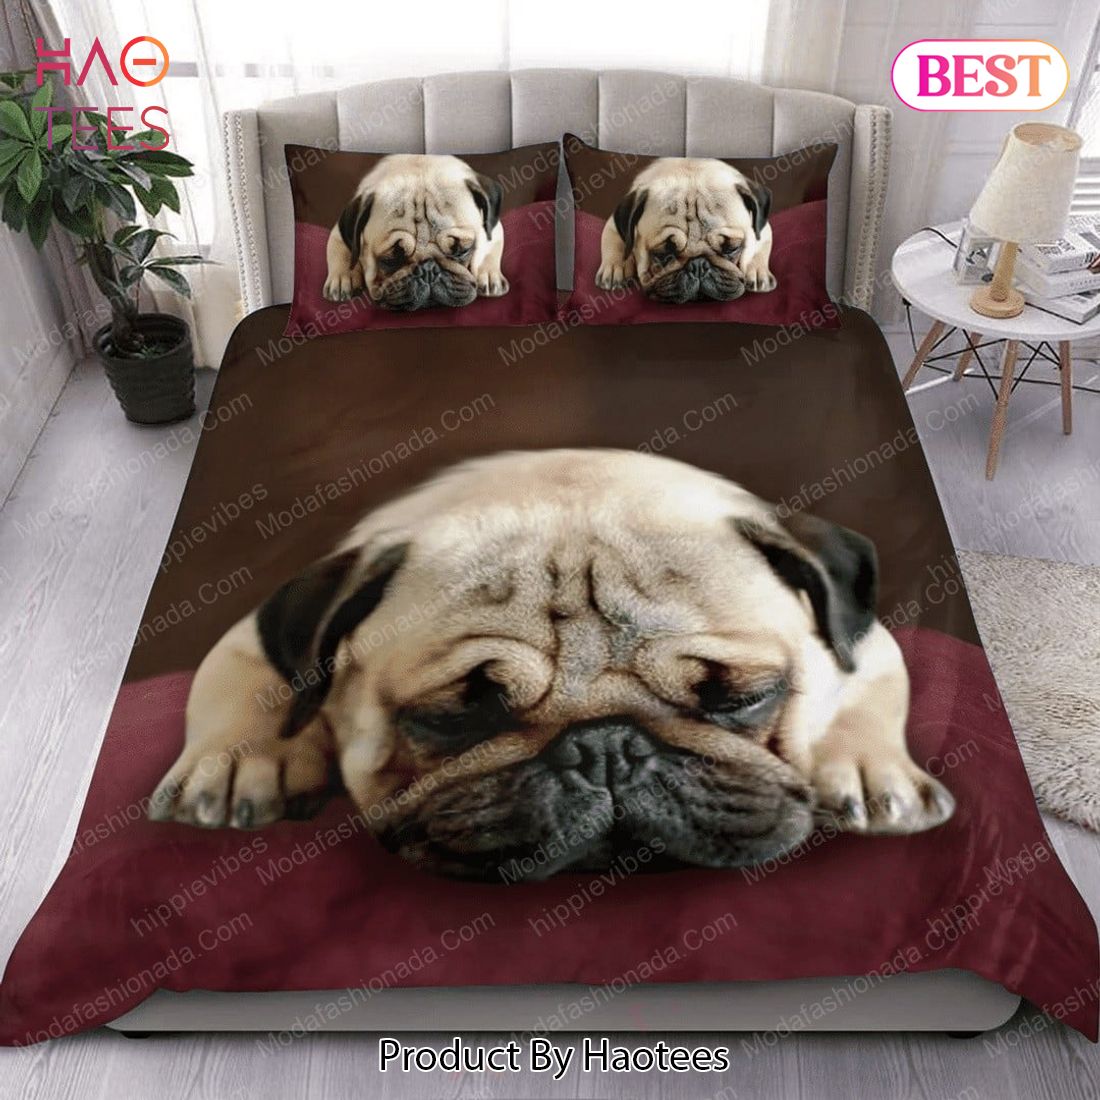 Buy Pug Sleeping Dog Animal 92 Bedding Set Bed Sets, Bedroom Sets, Comforter Sets, Duvet Cover, Bedspread